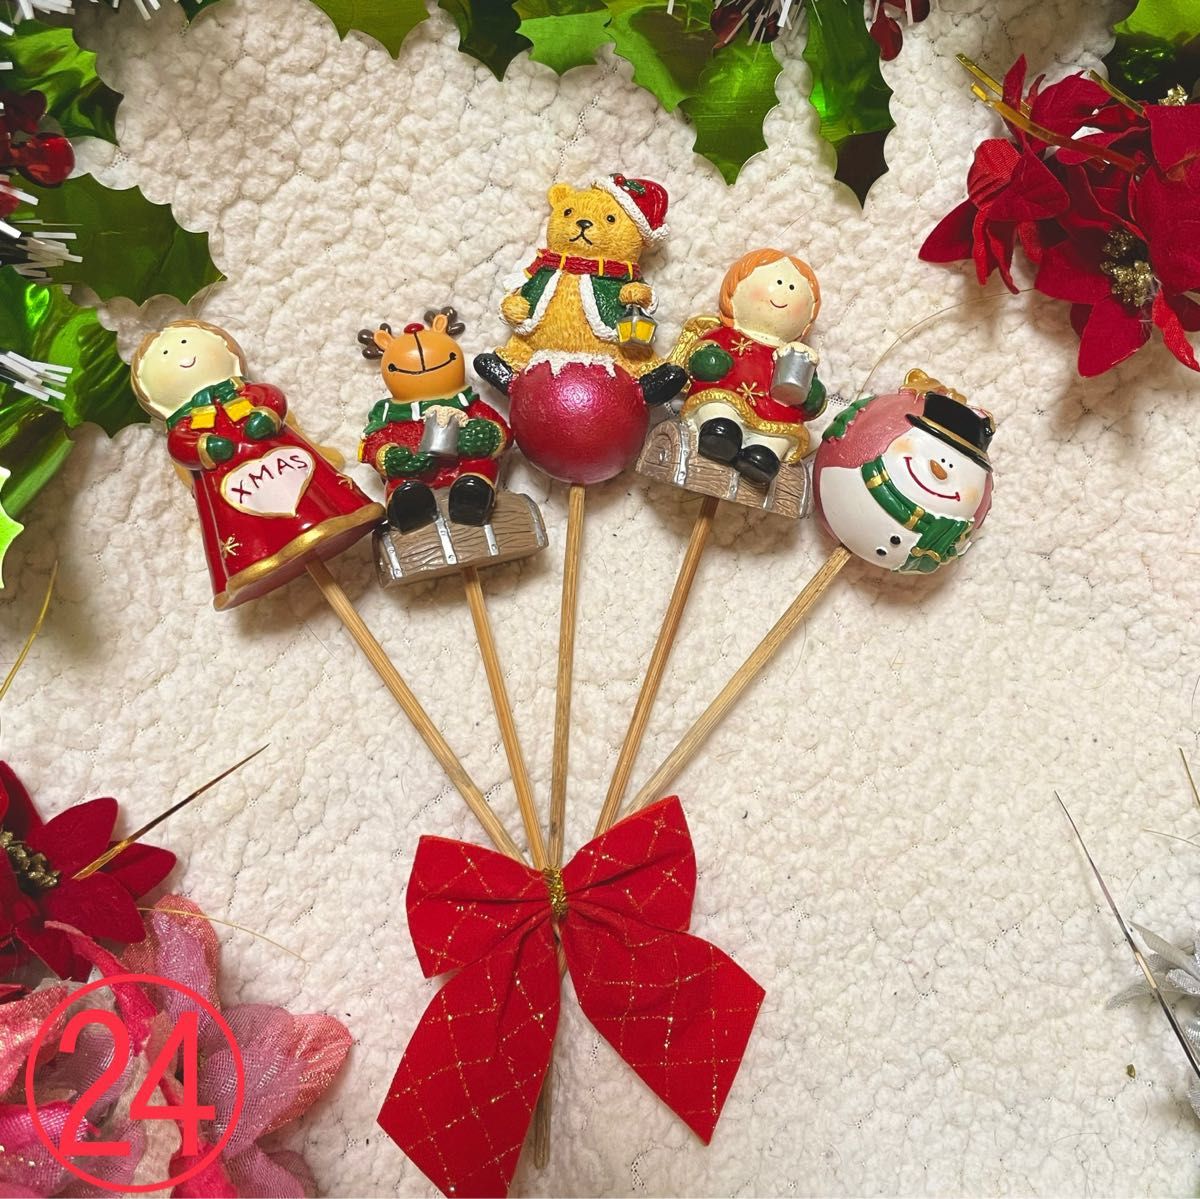 24 クリスマスピック ガーデンピック オブジェ 置き物 サンタ トナカイ 飾り ツリー  スノーマン オーナメント グッズ 雑貨